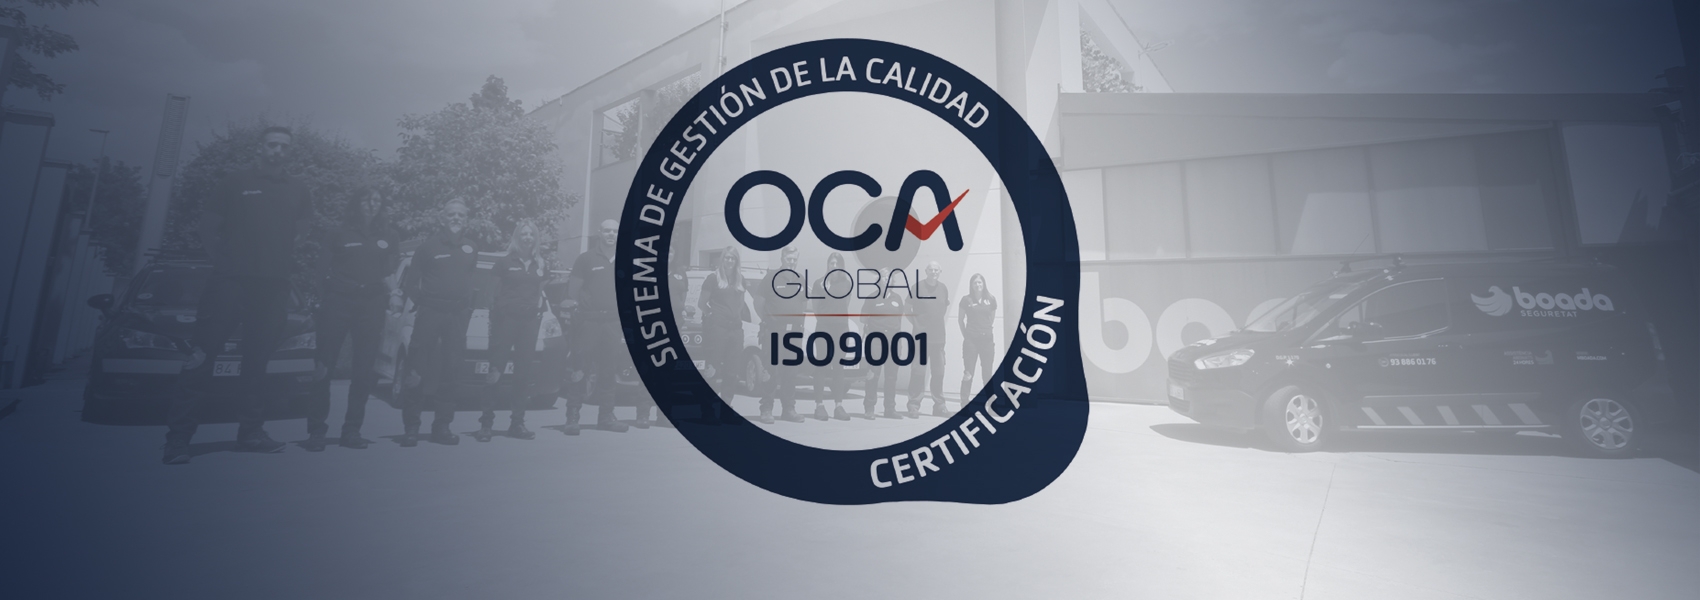 Boada, empresa de Qualitat ISO 9001:2015 Primera empresa instal·ladora de sistemes contra incendi de OCA GLOBAL